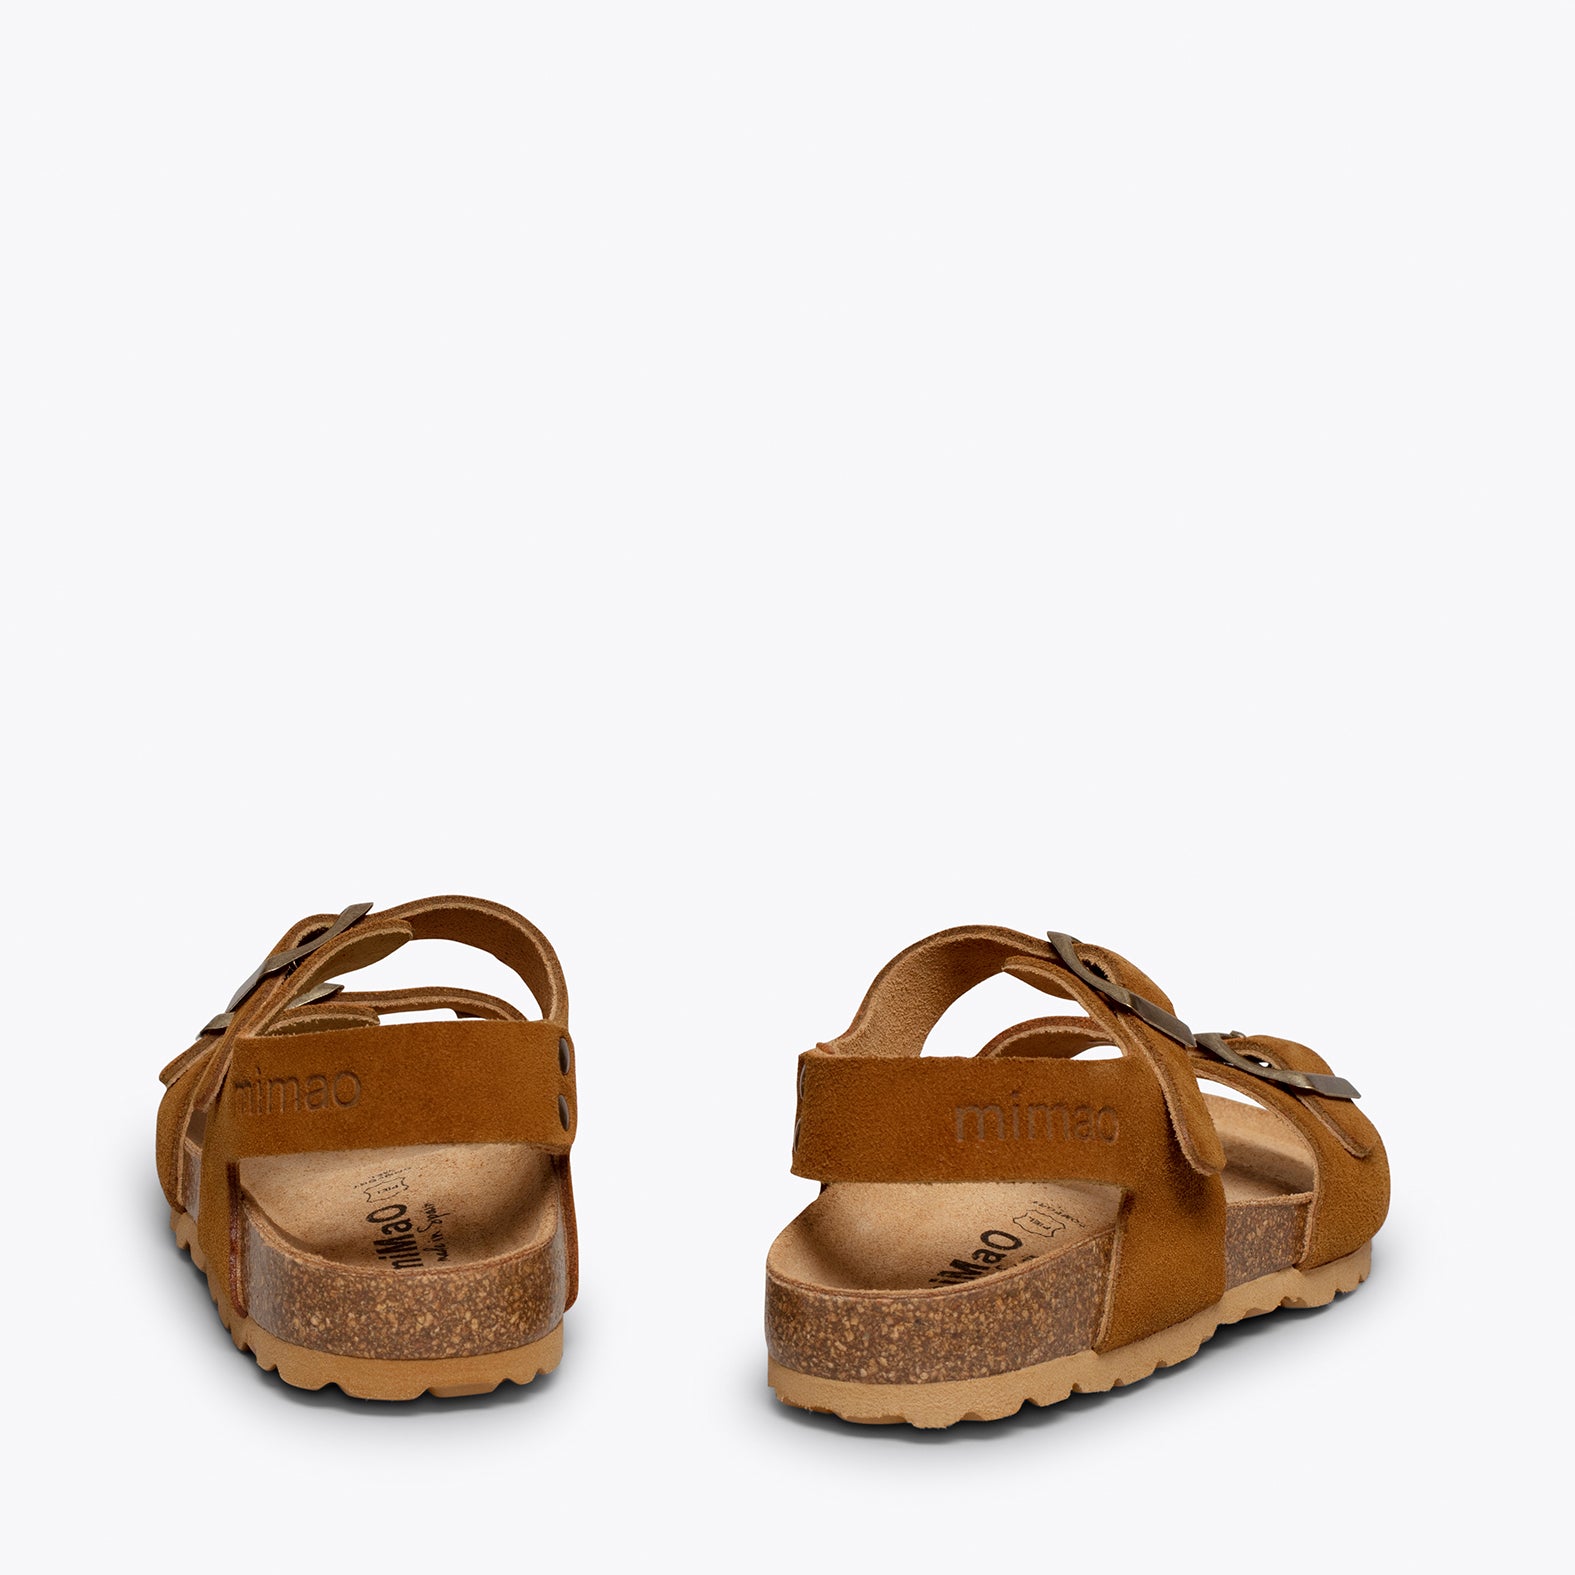 MARSHMALLOW – CAMEL bio sandal for kids